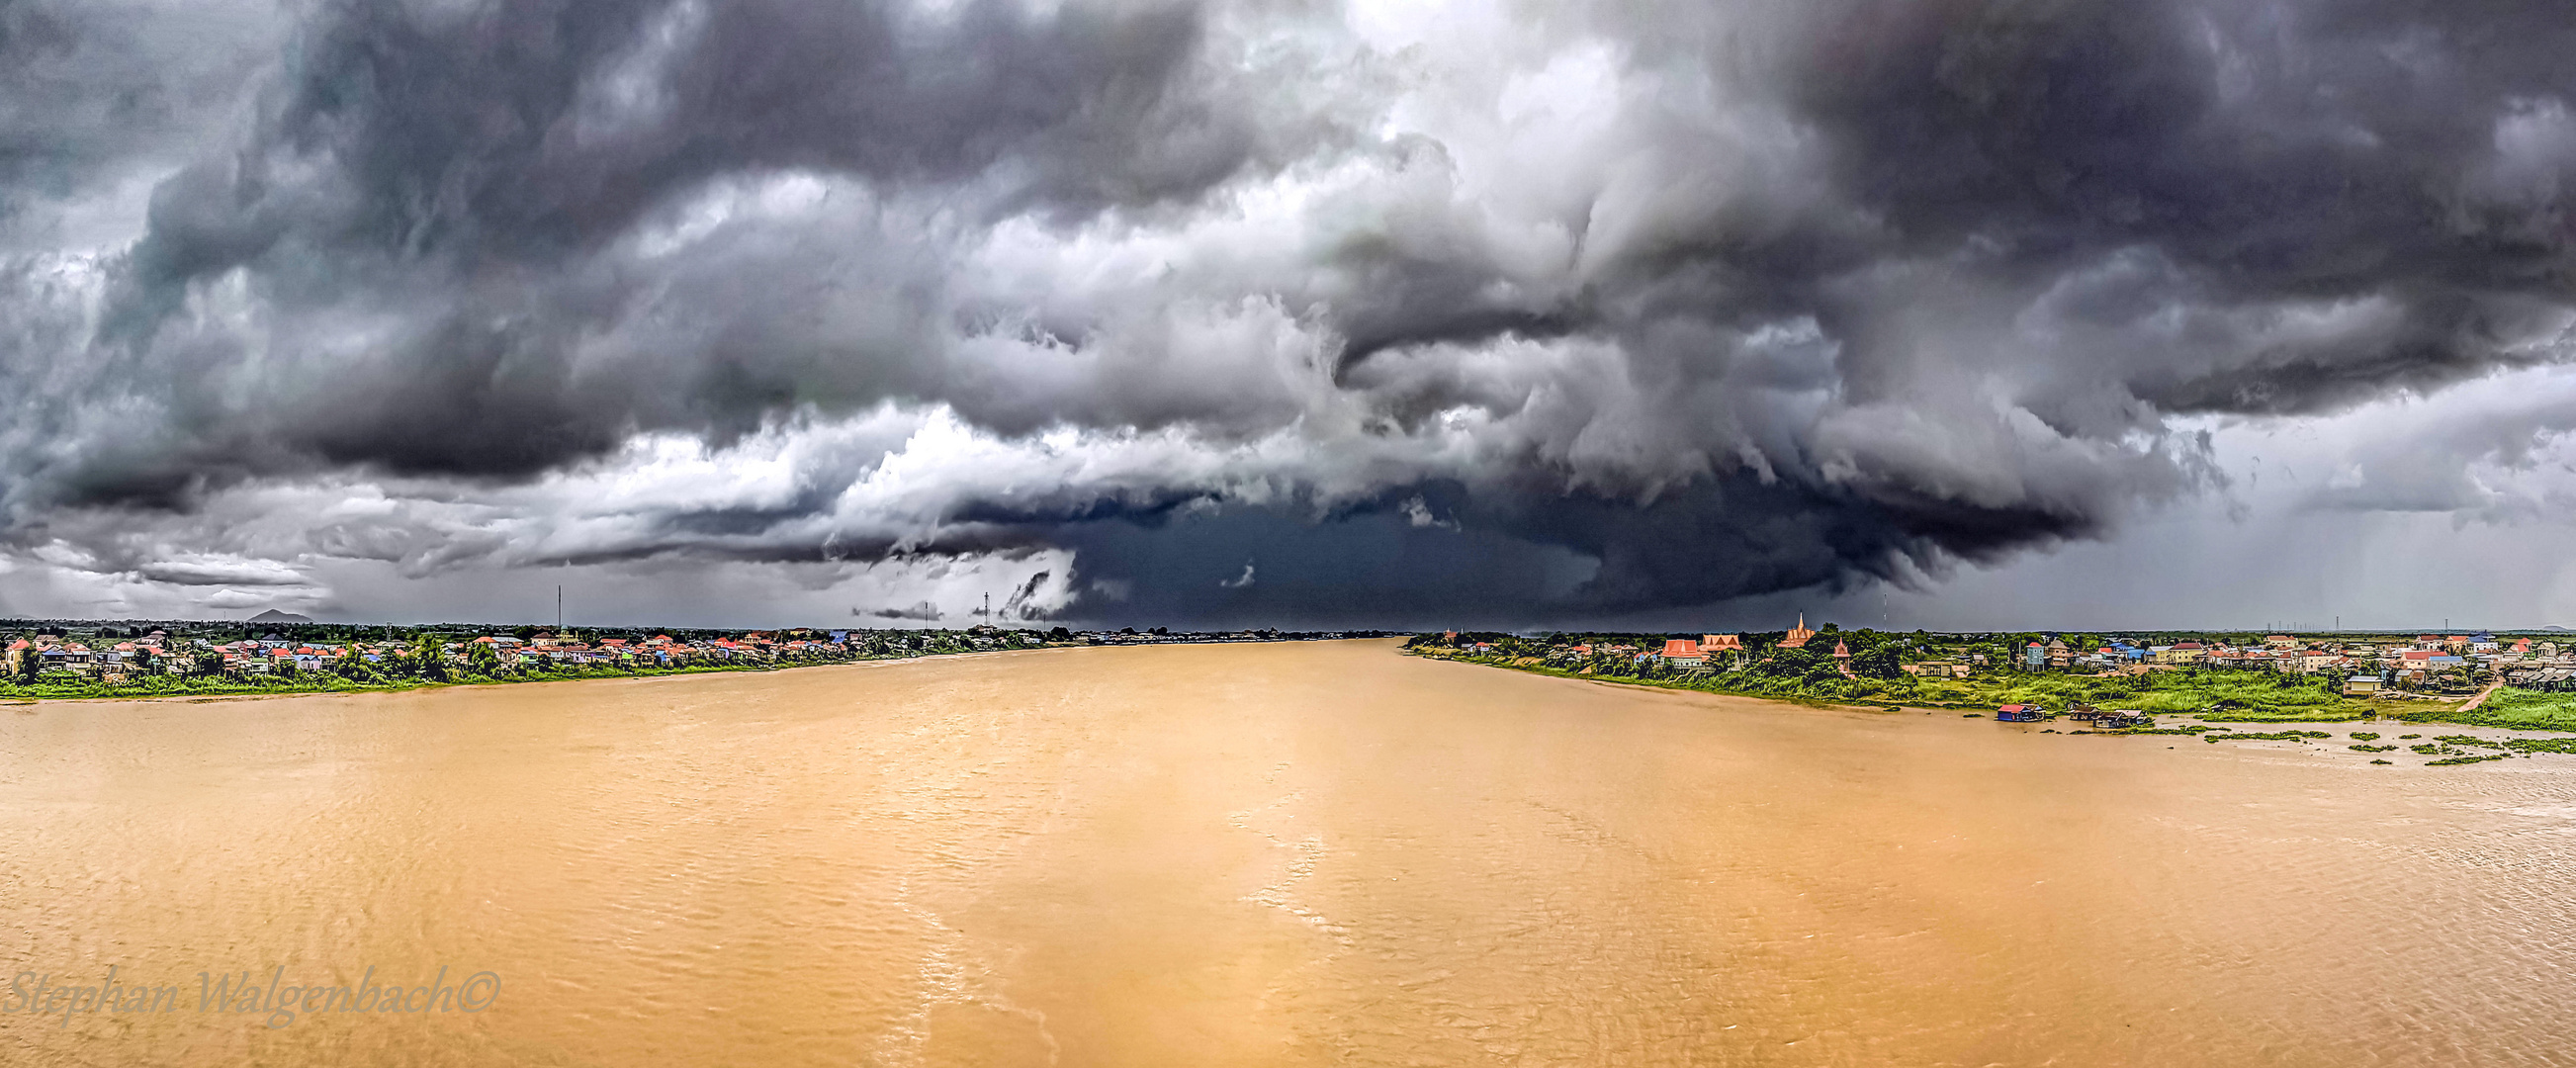 Gewitterfront am Tonle Sap (Fluss) Kambodscha